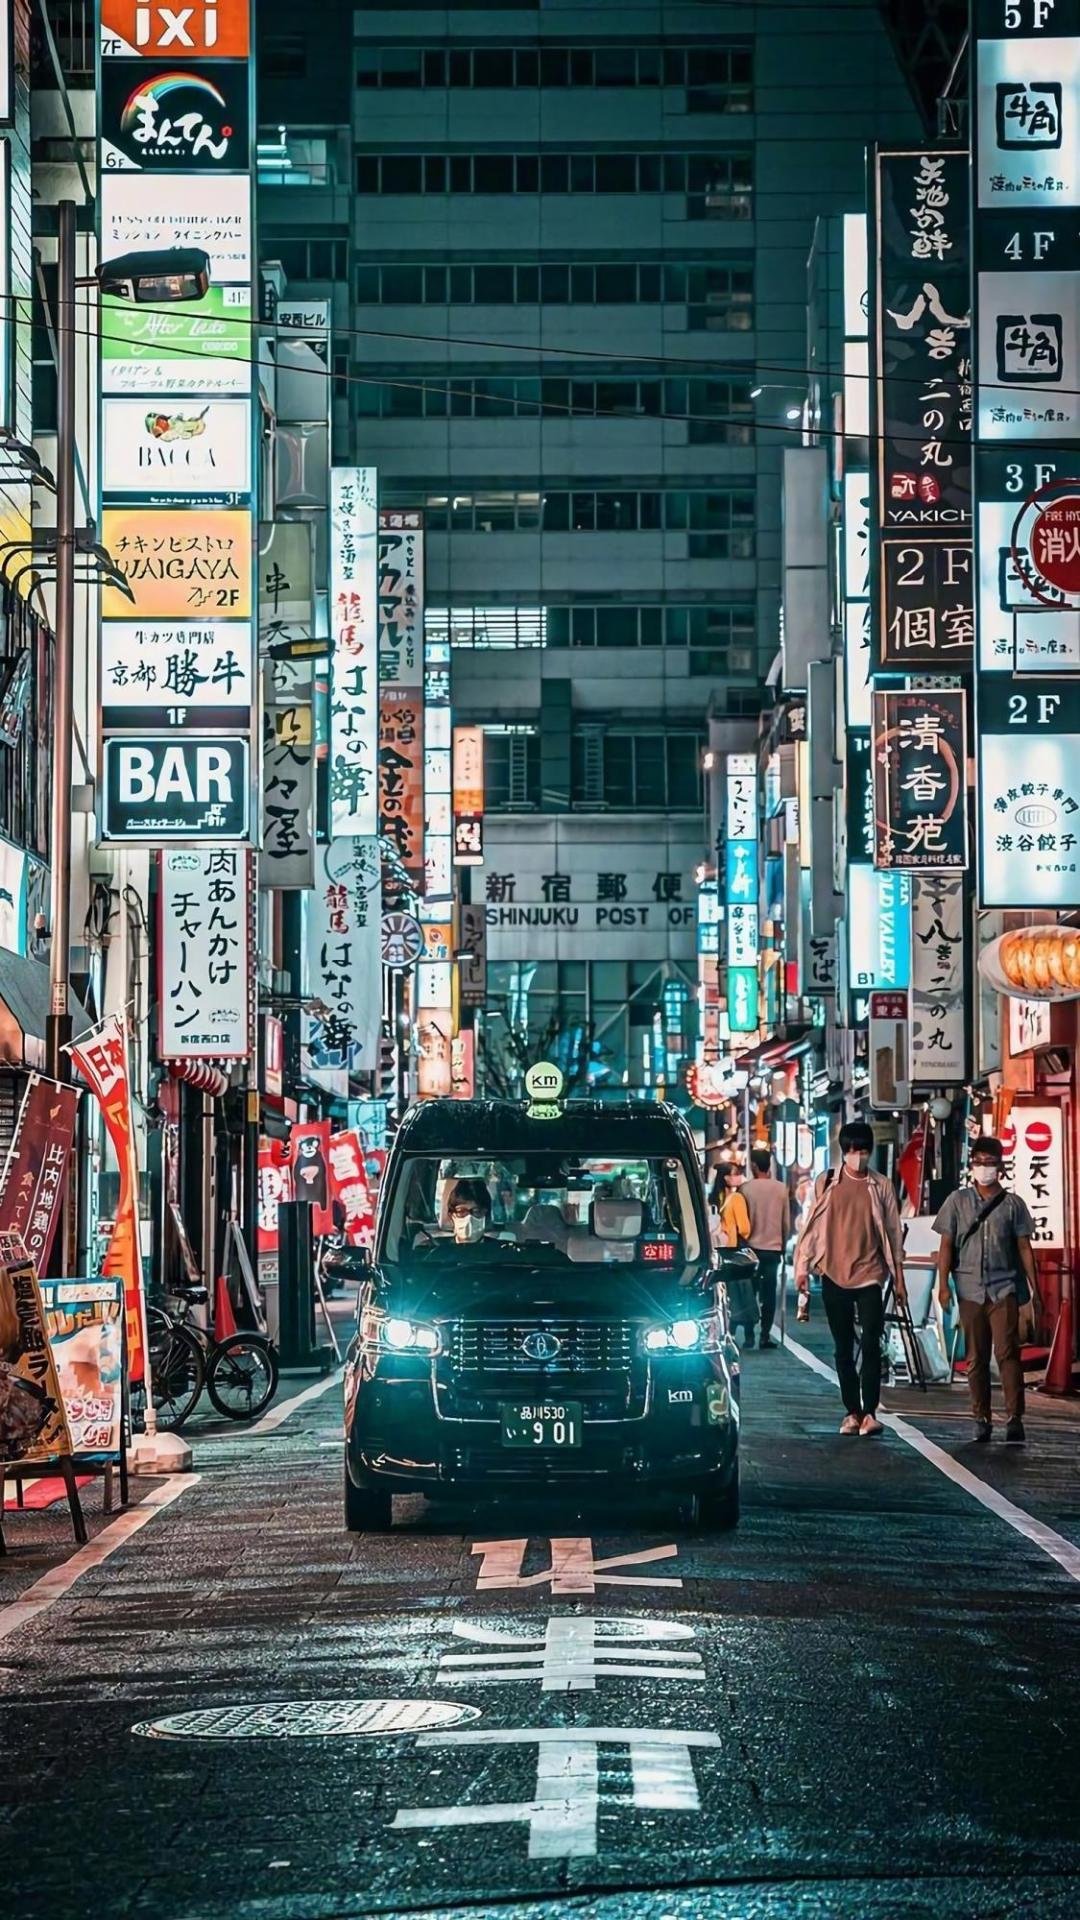 繁华的日本城市街景风光,高清图片,手机壁纸